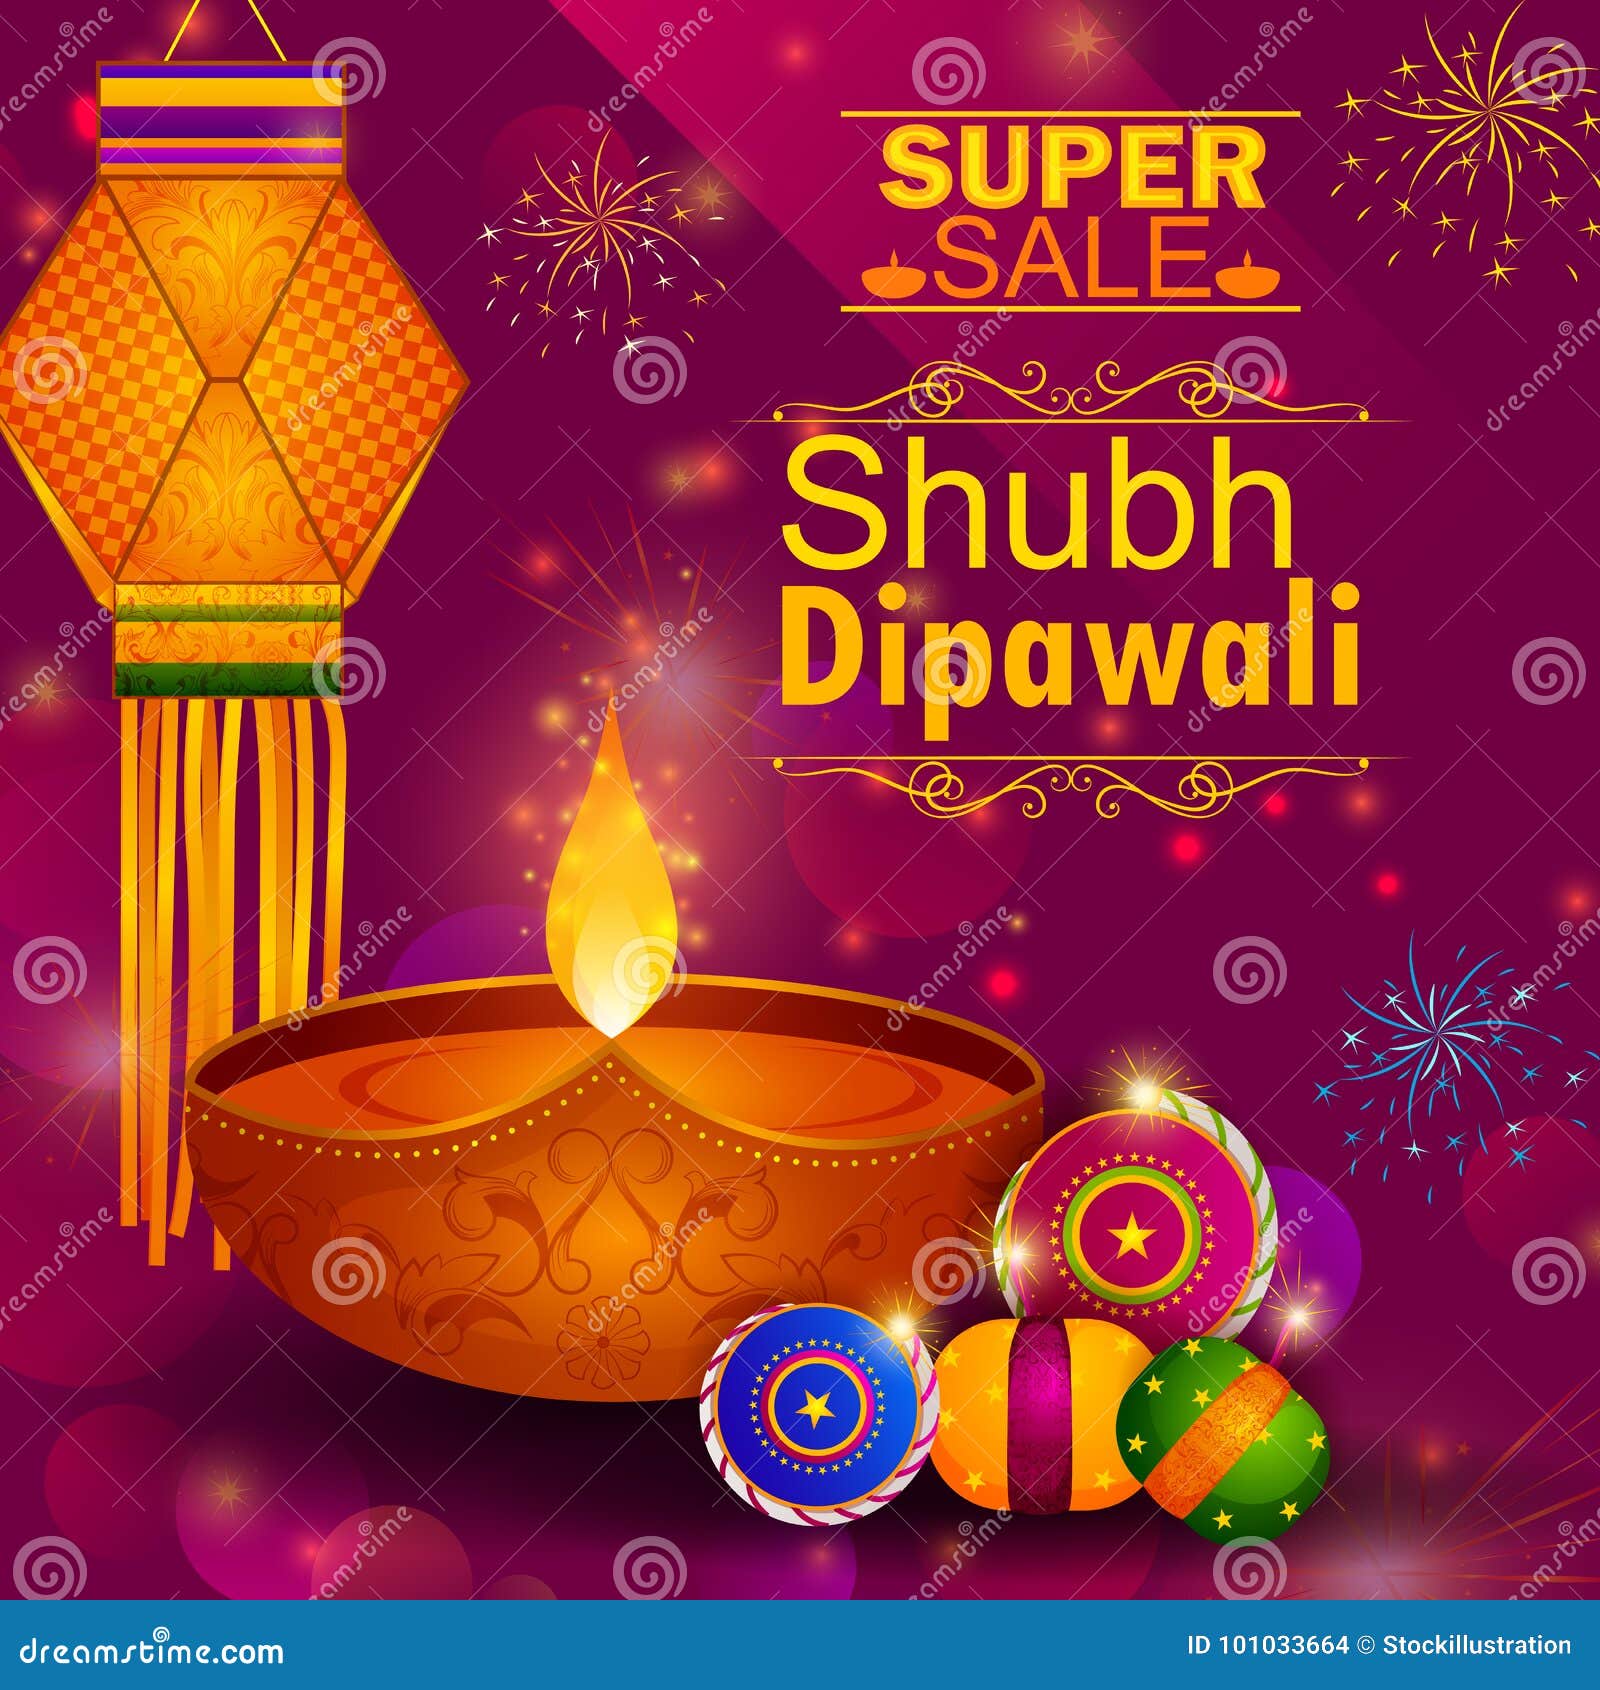 Chào đón ngày Diwali, người ta thường gửi những lời chúc tốt đẹp đến bạn bè và gia đình. Hãy xem hình ảnh này để cùng nhau thưởng thức những lời chúc tuyệt vời nhất cho ngày lễ truyền thống này!